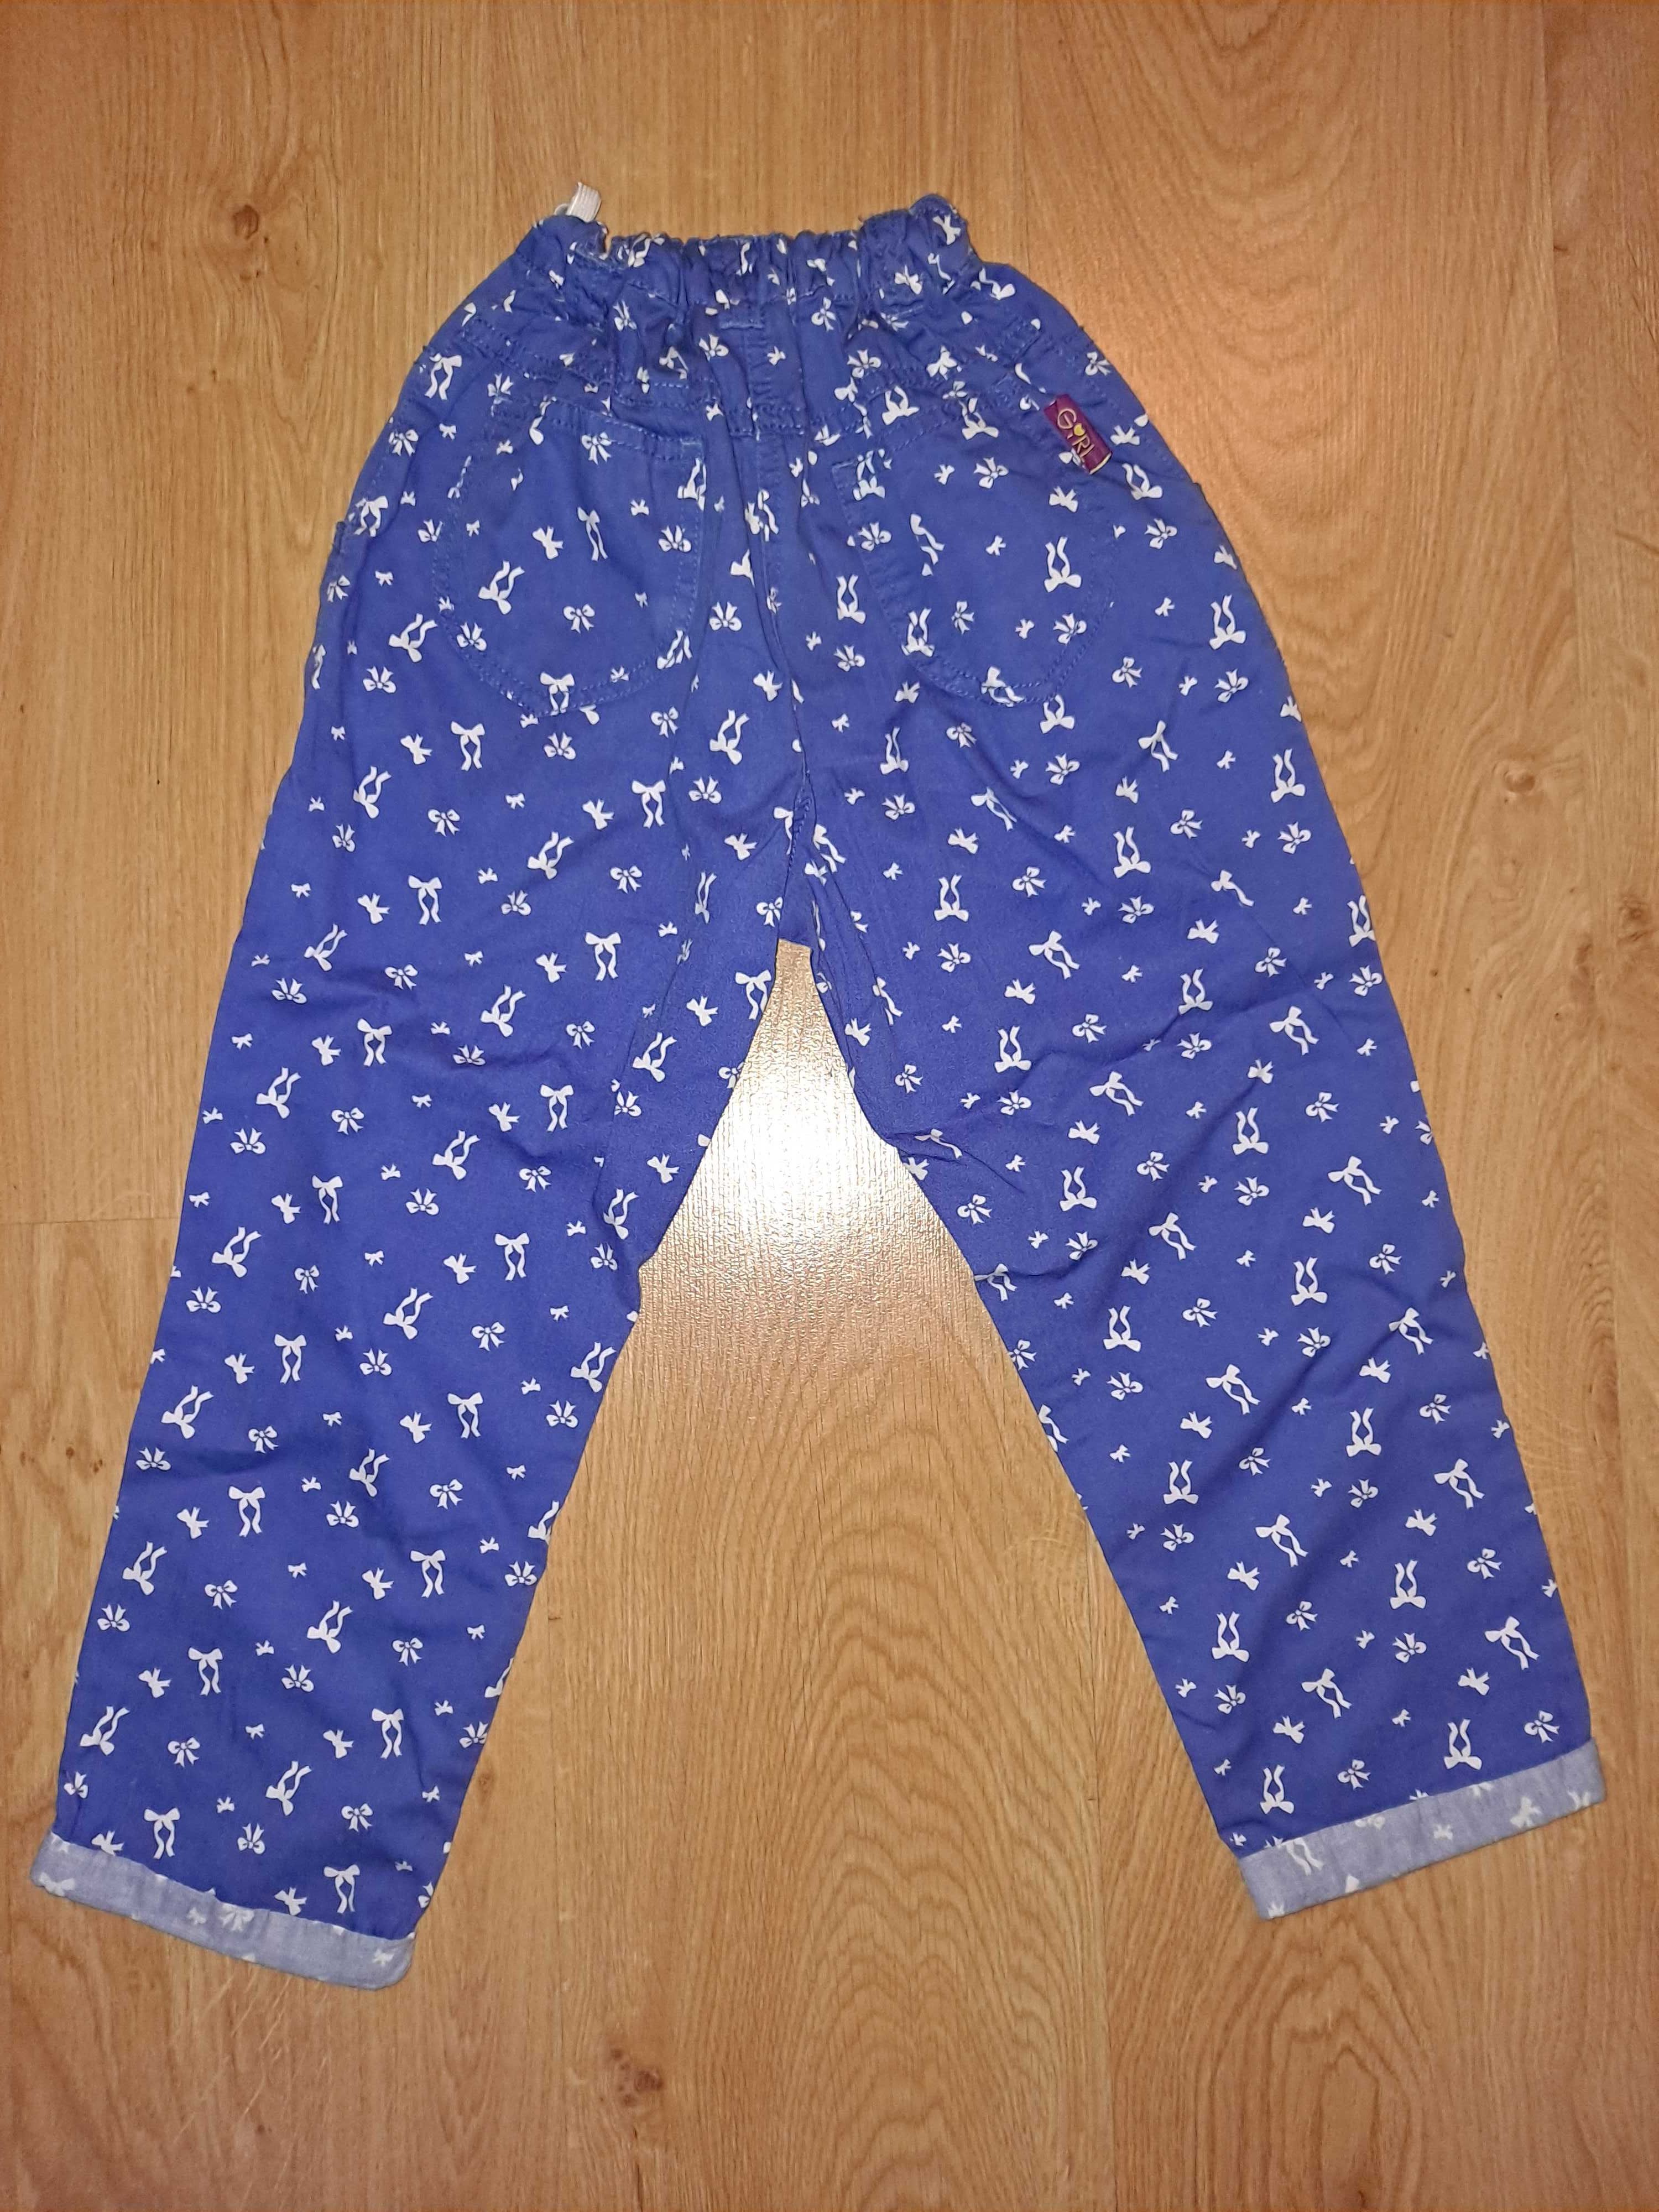 Spodnie niebieskie dla dziewczynki 122